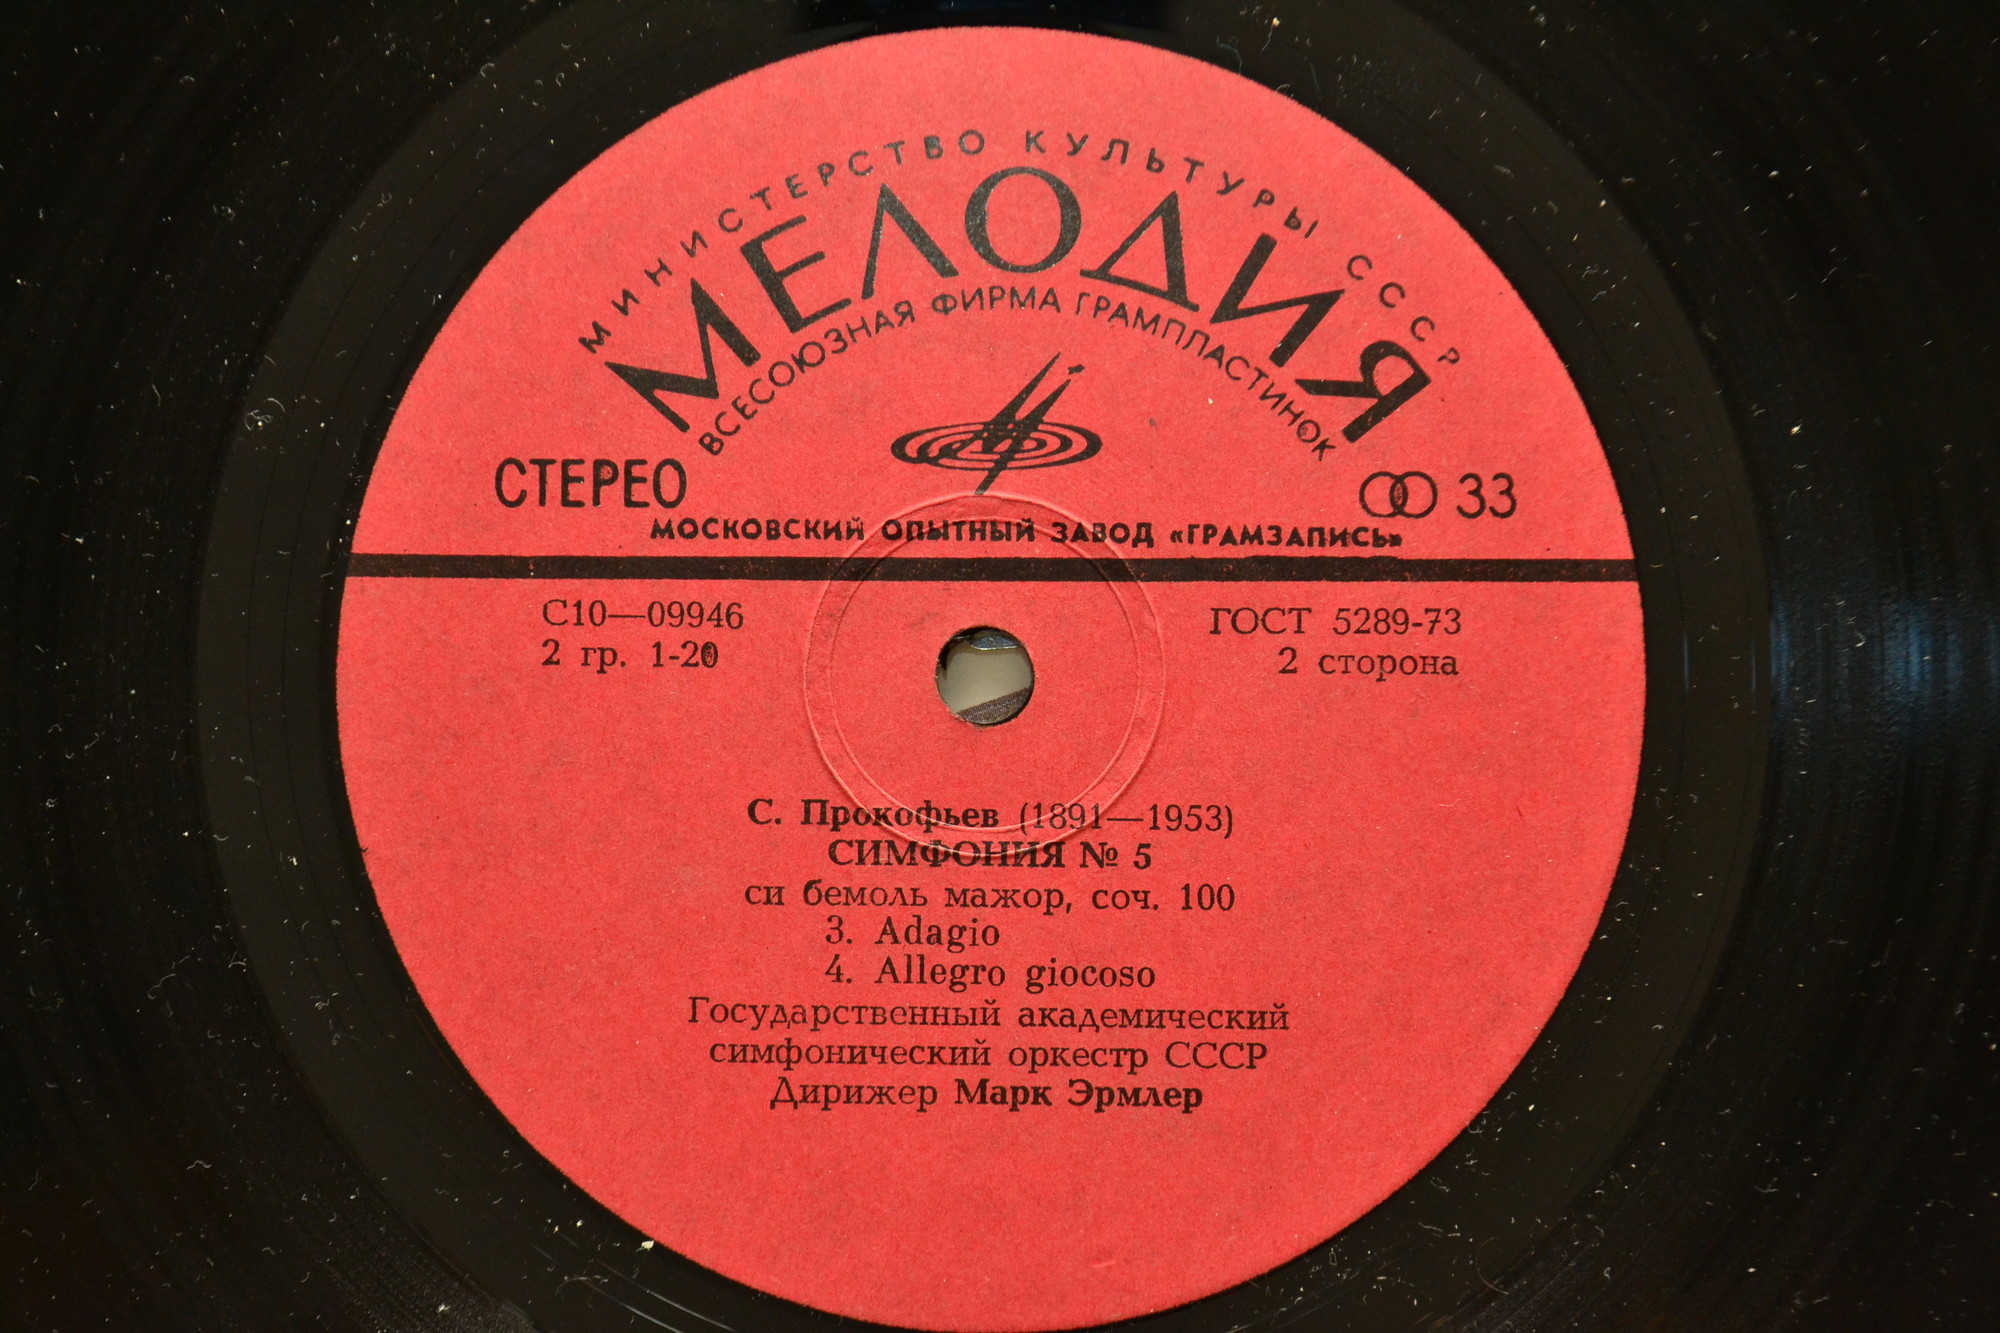 С. ПРОКОФЬЕВ (1891-1963): Симфония № 5 Си бемоль мажор, соч. 100.